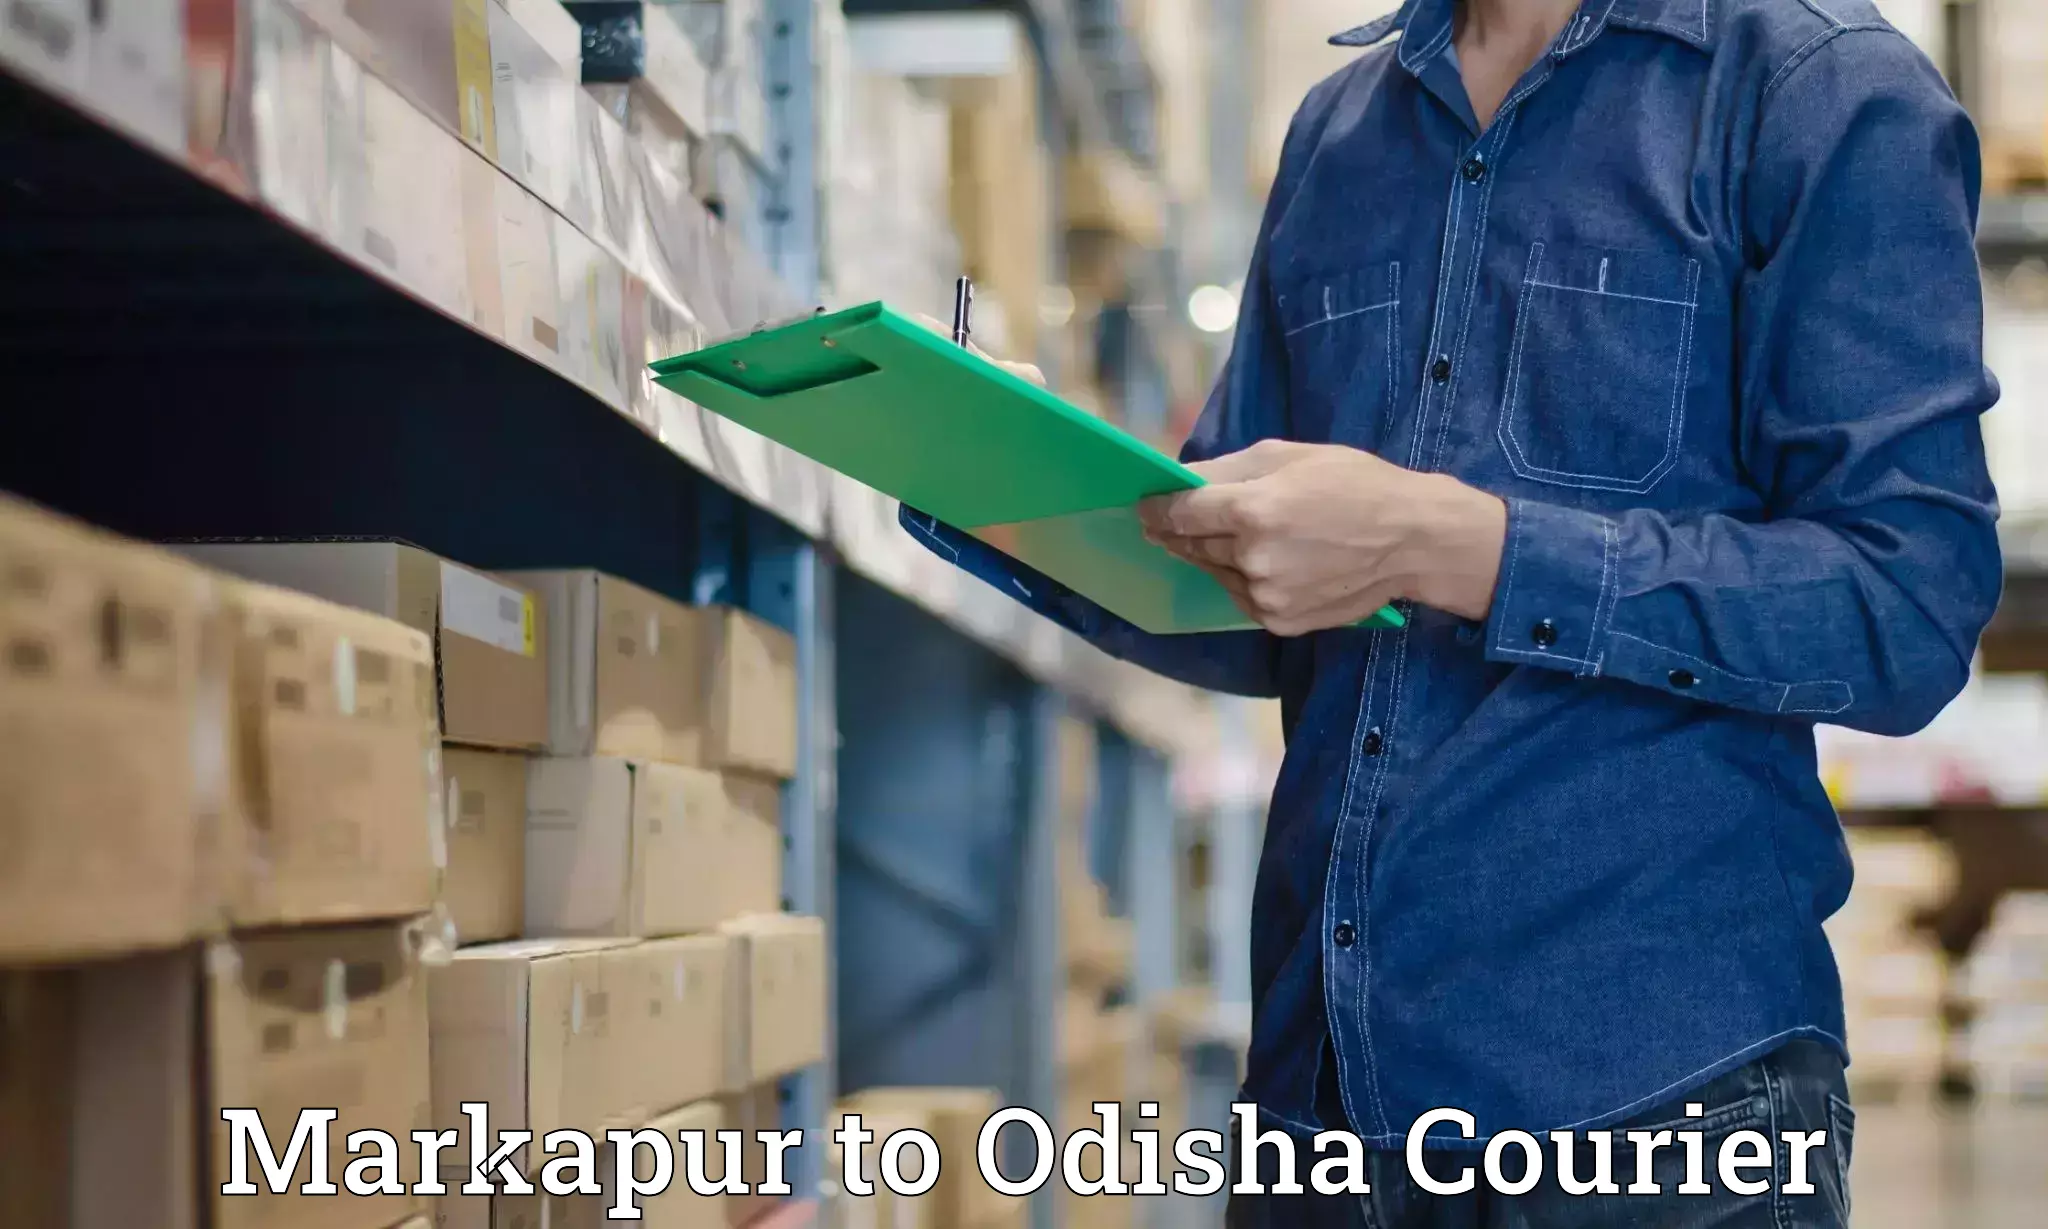 Customer-focused courier Markapur to Daspalla